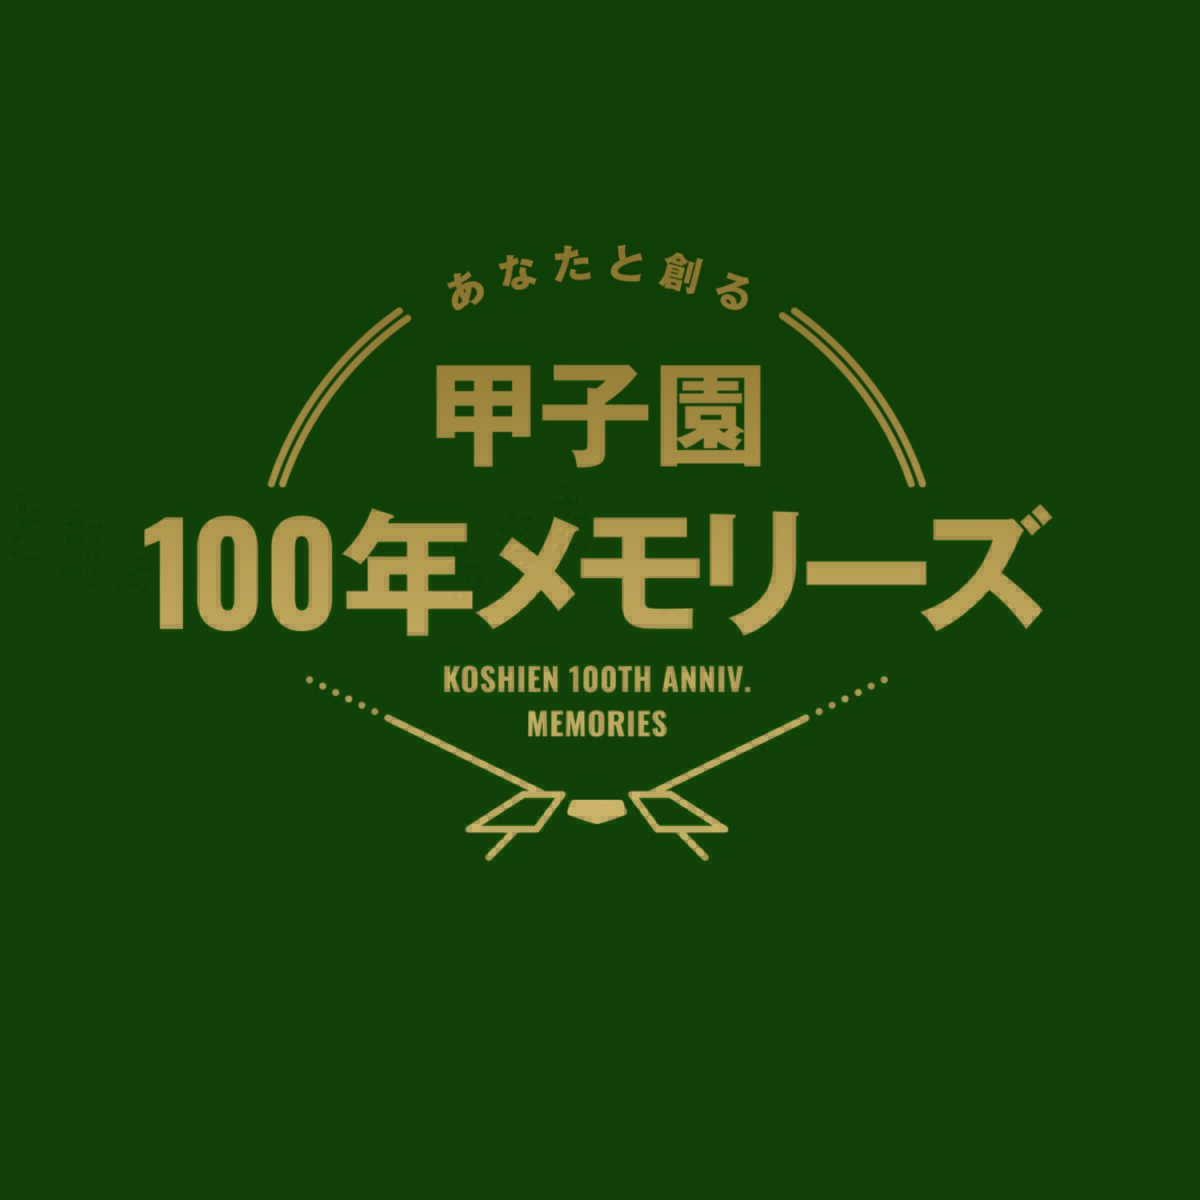 阪神甲子園球場100周年記念。名作野球マンガとのコラボ企画もスタート